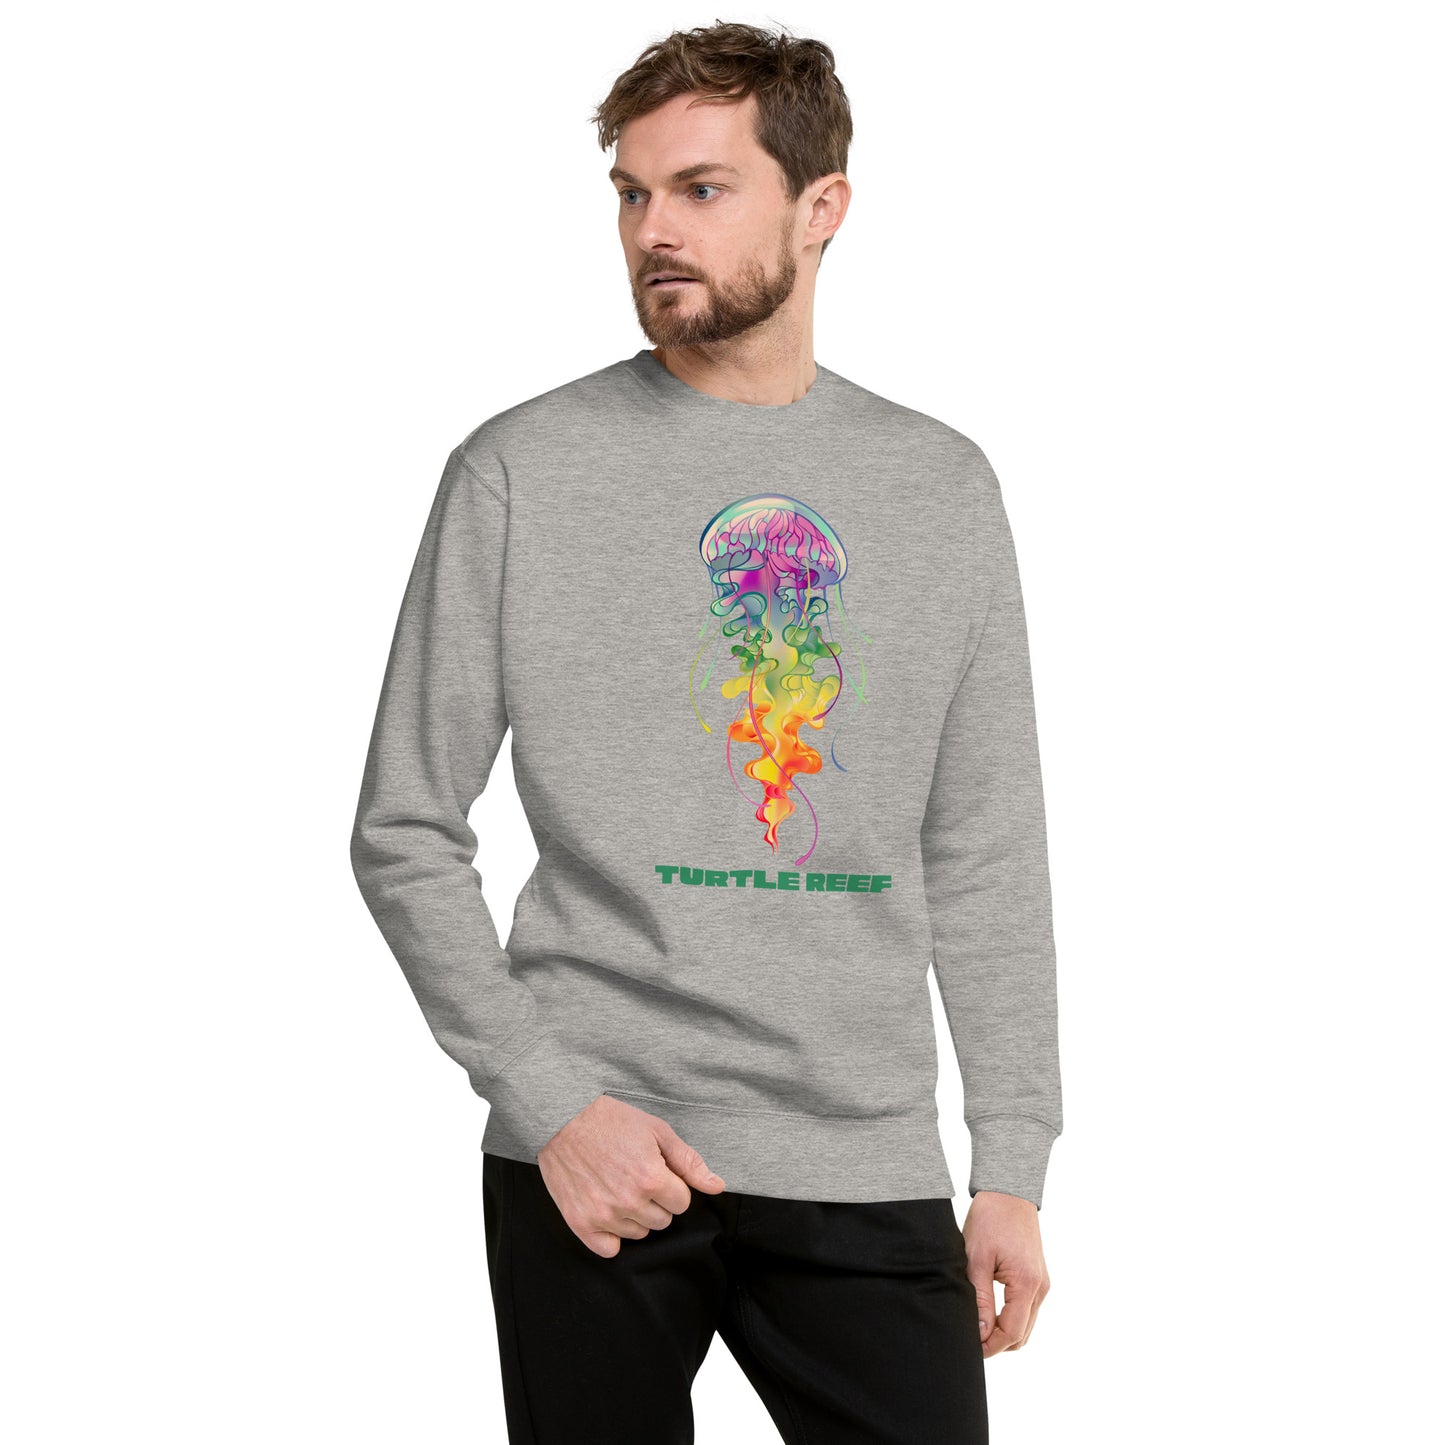 Jellyfish Sweatshirt